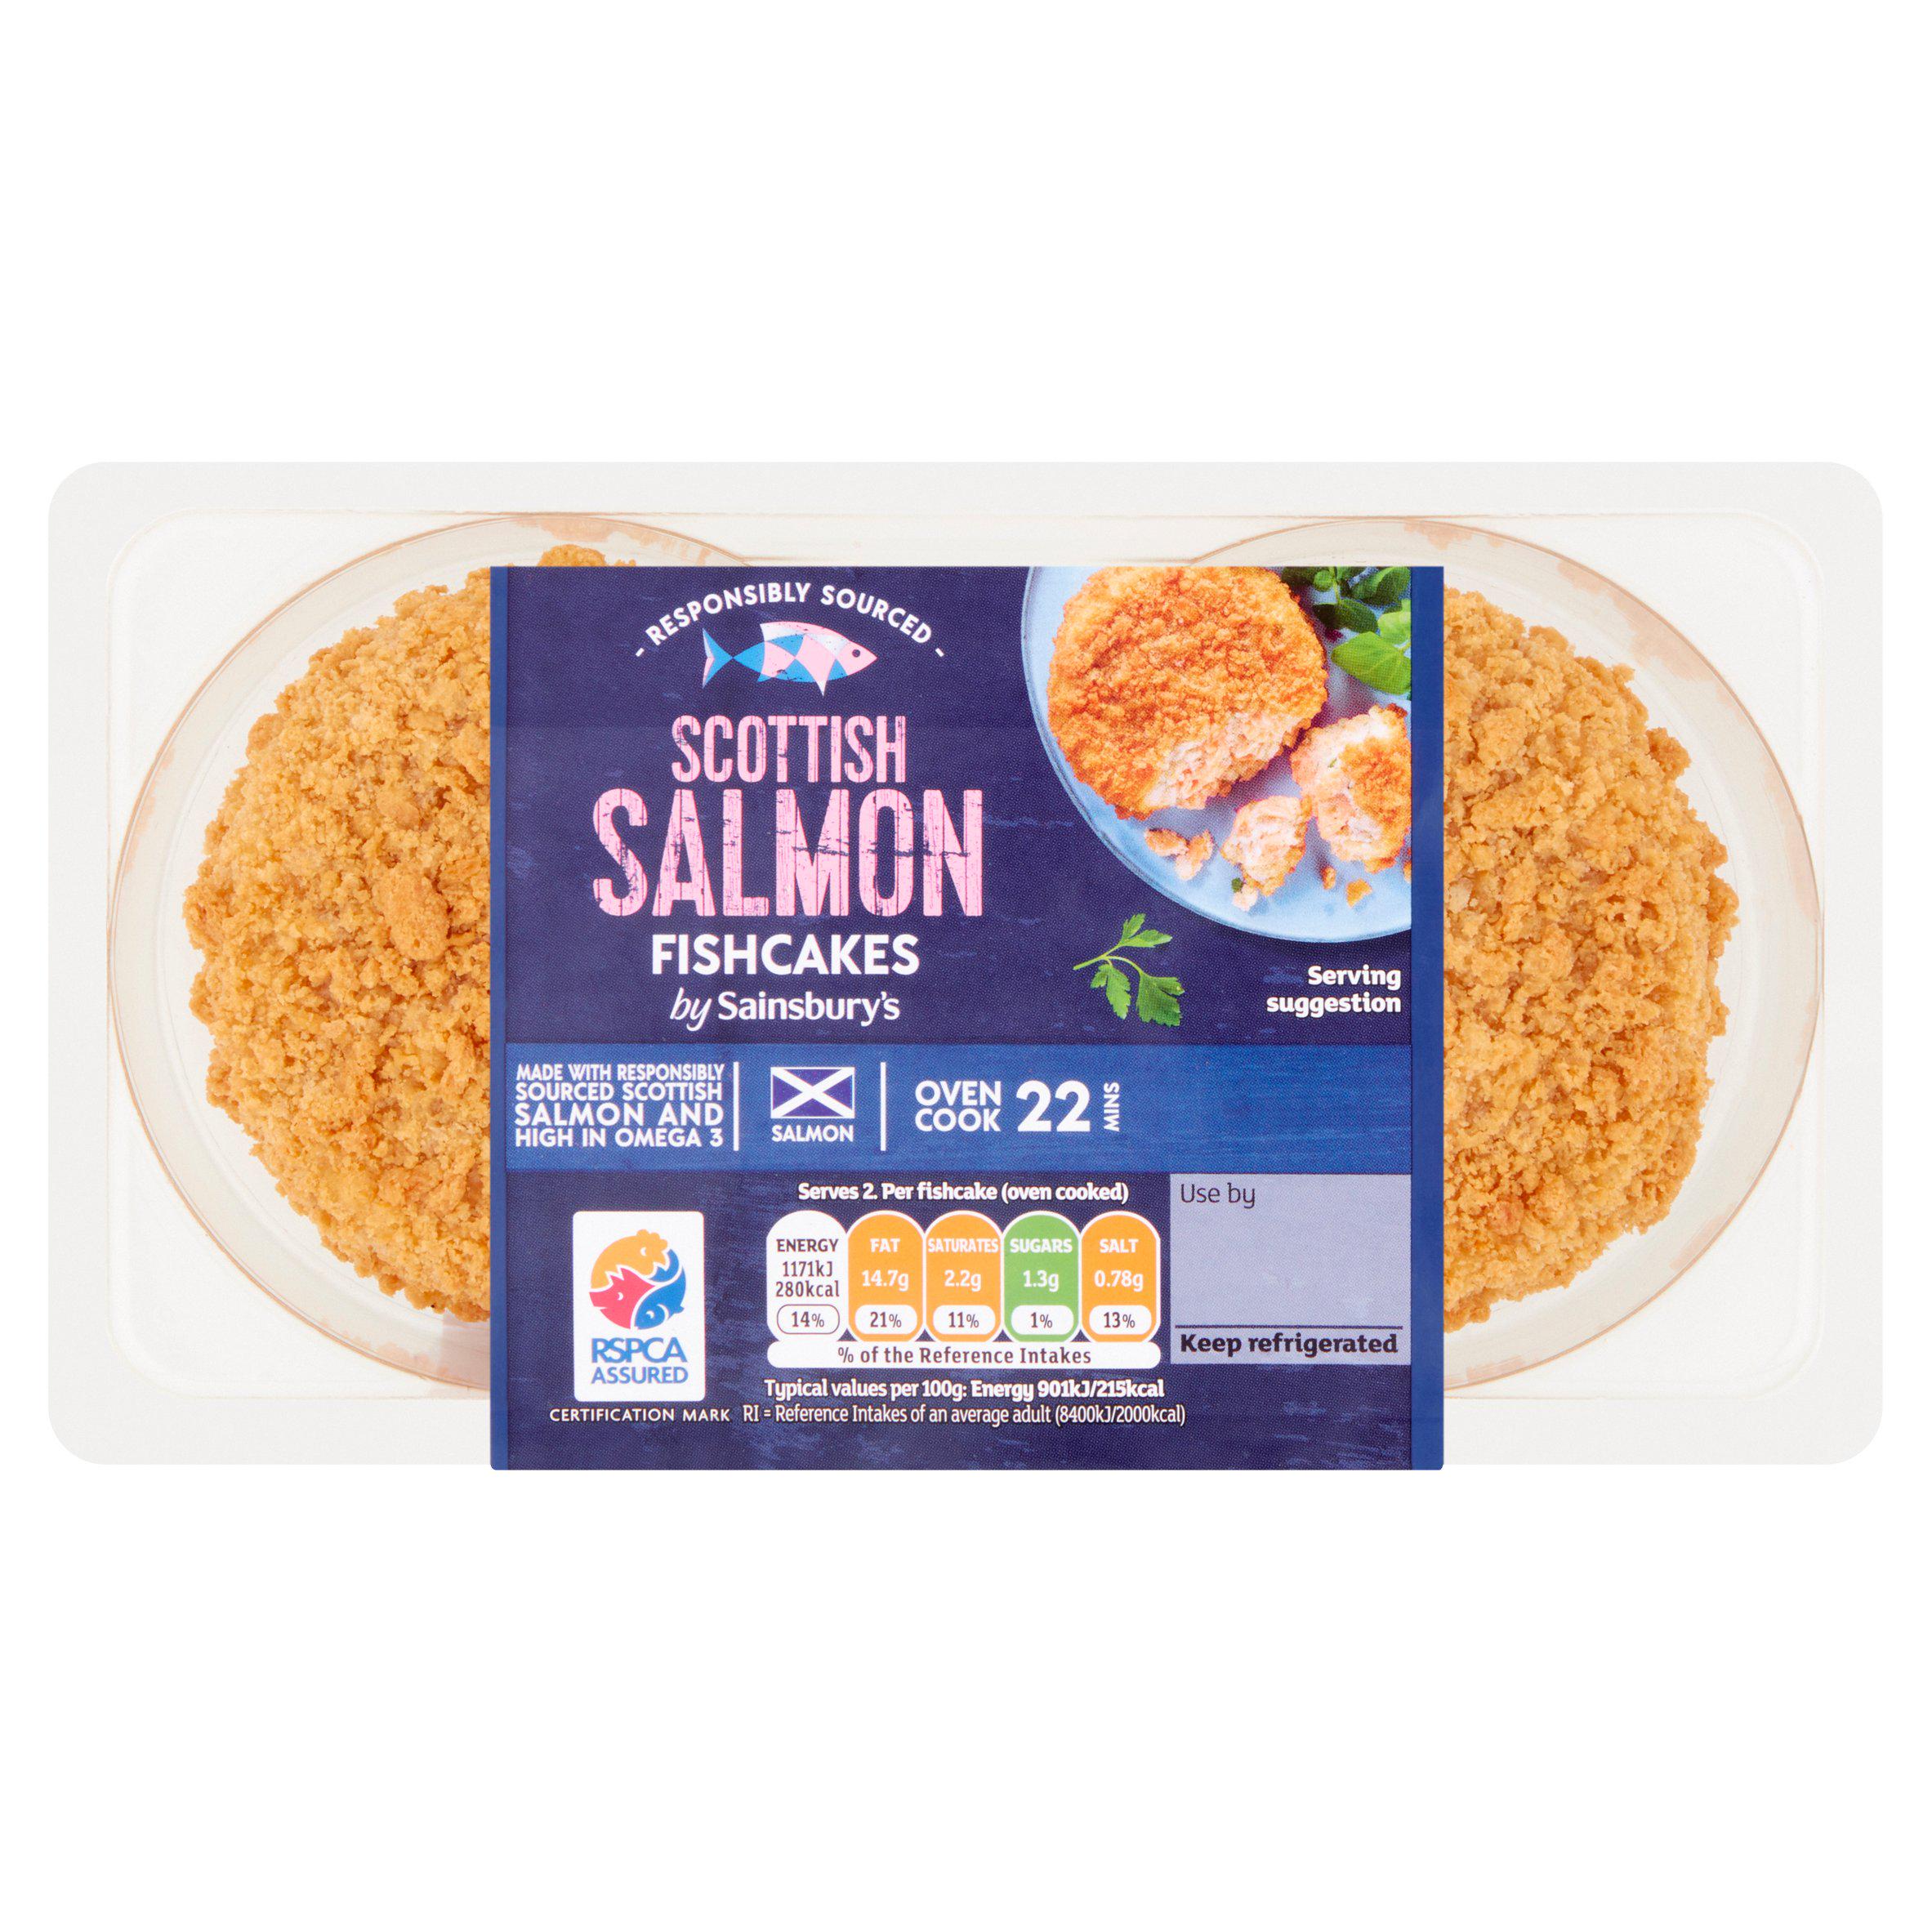 Sainsbury's Fishcakes Scottish Salmon x2